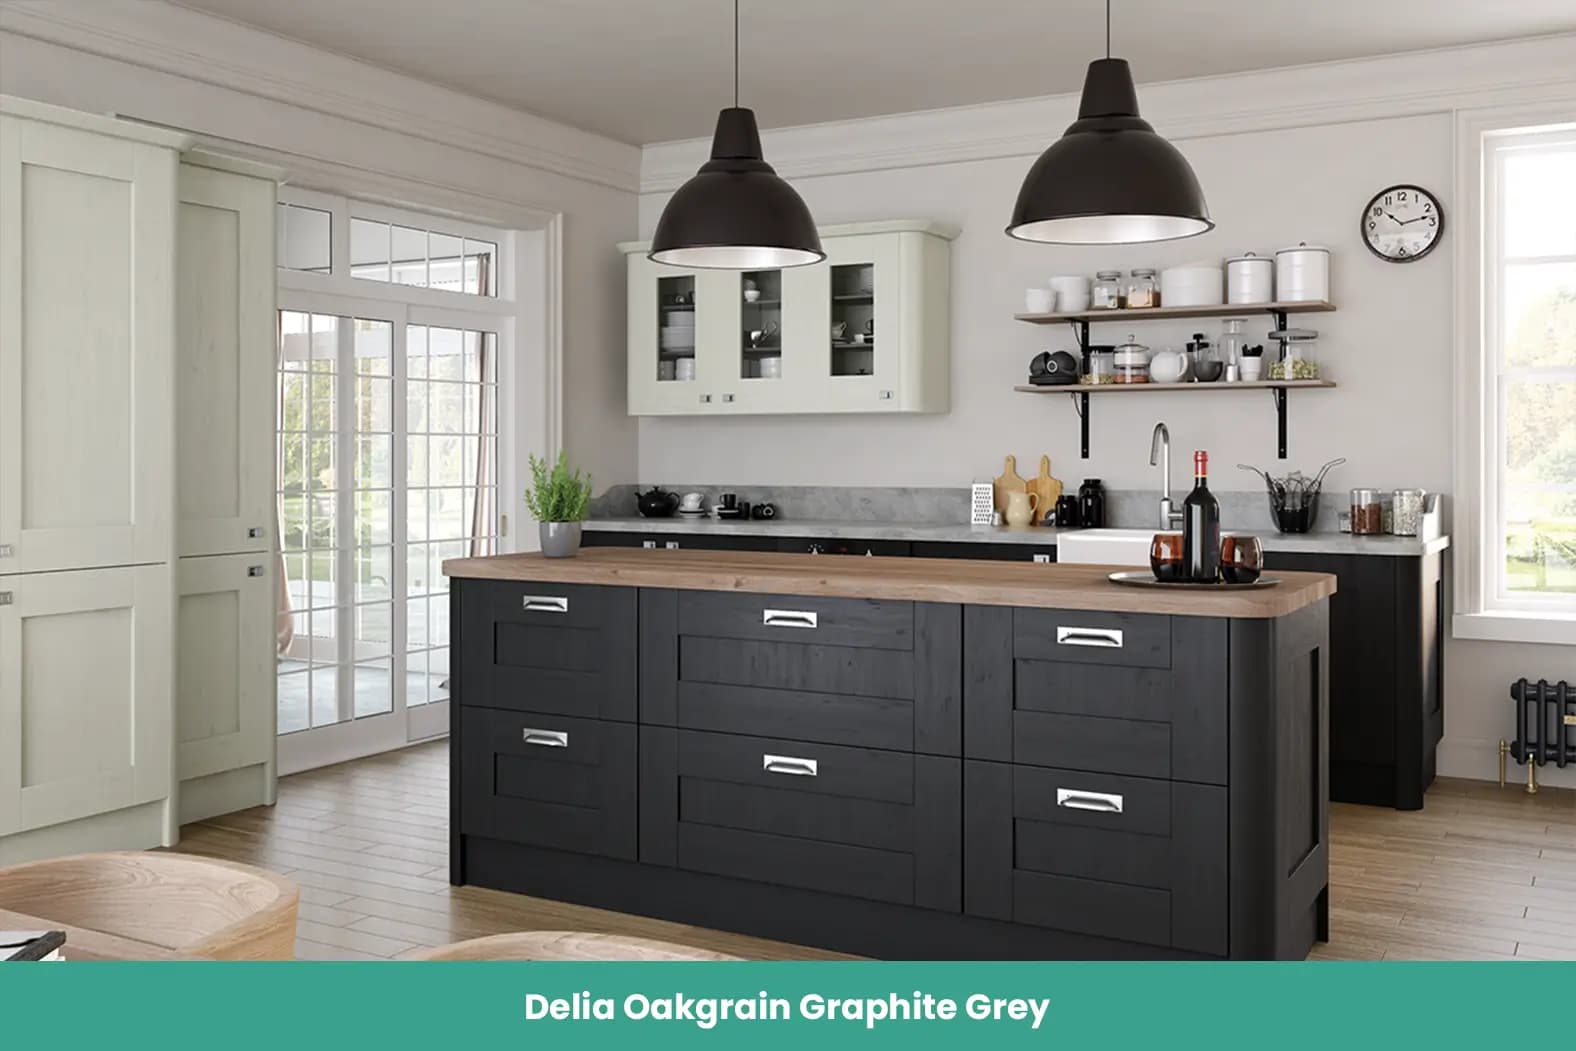 Delia Oakgrain Graphite Grey Kitchen